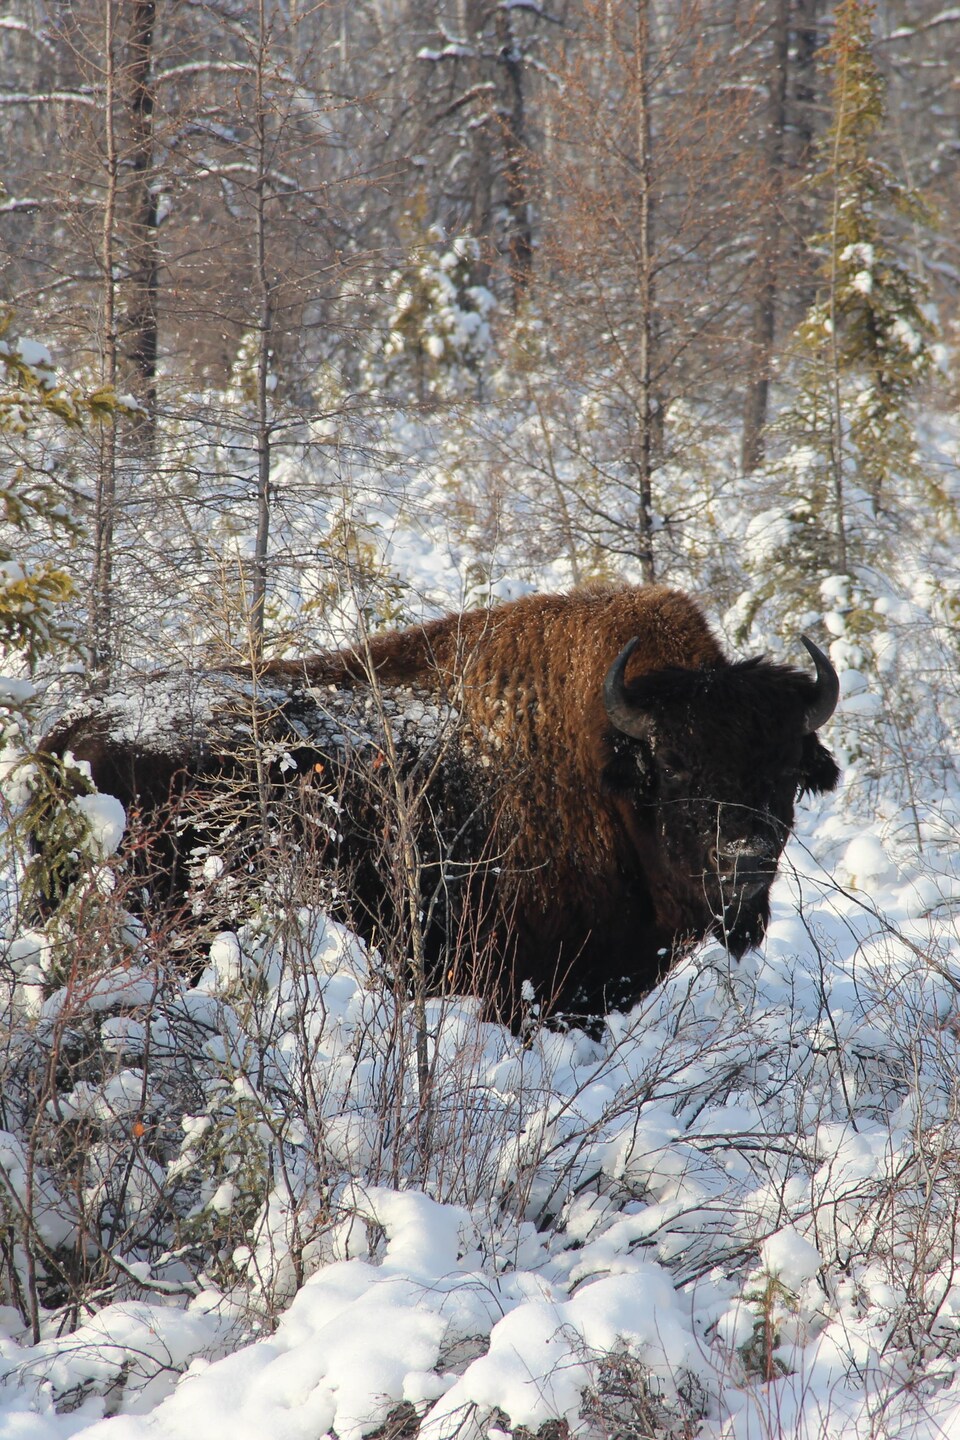 Un bison des bois dans une forêt enneigée.